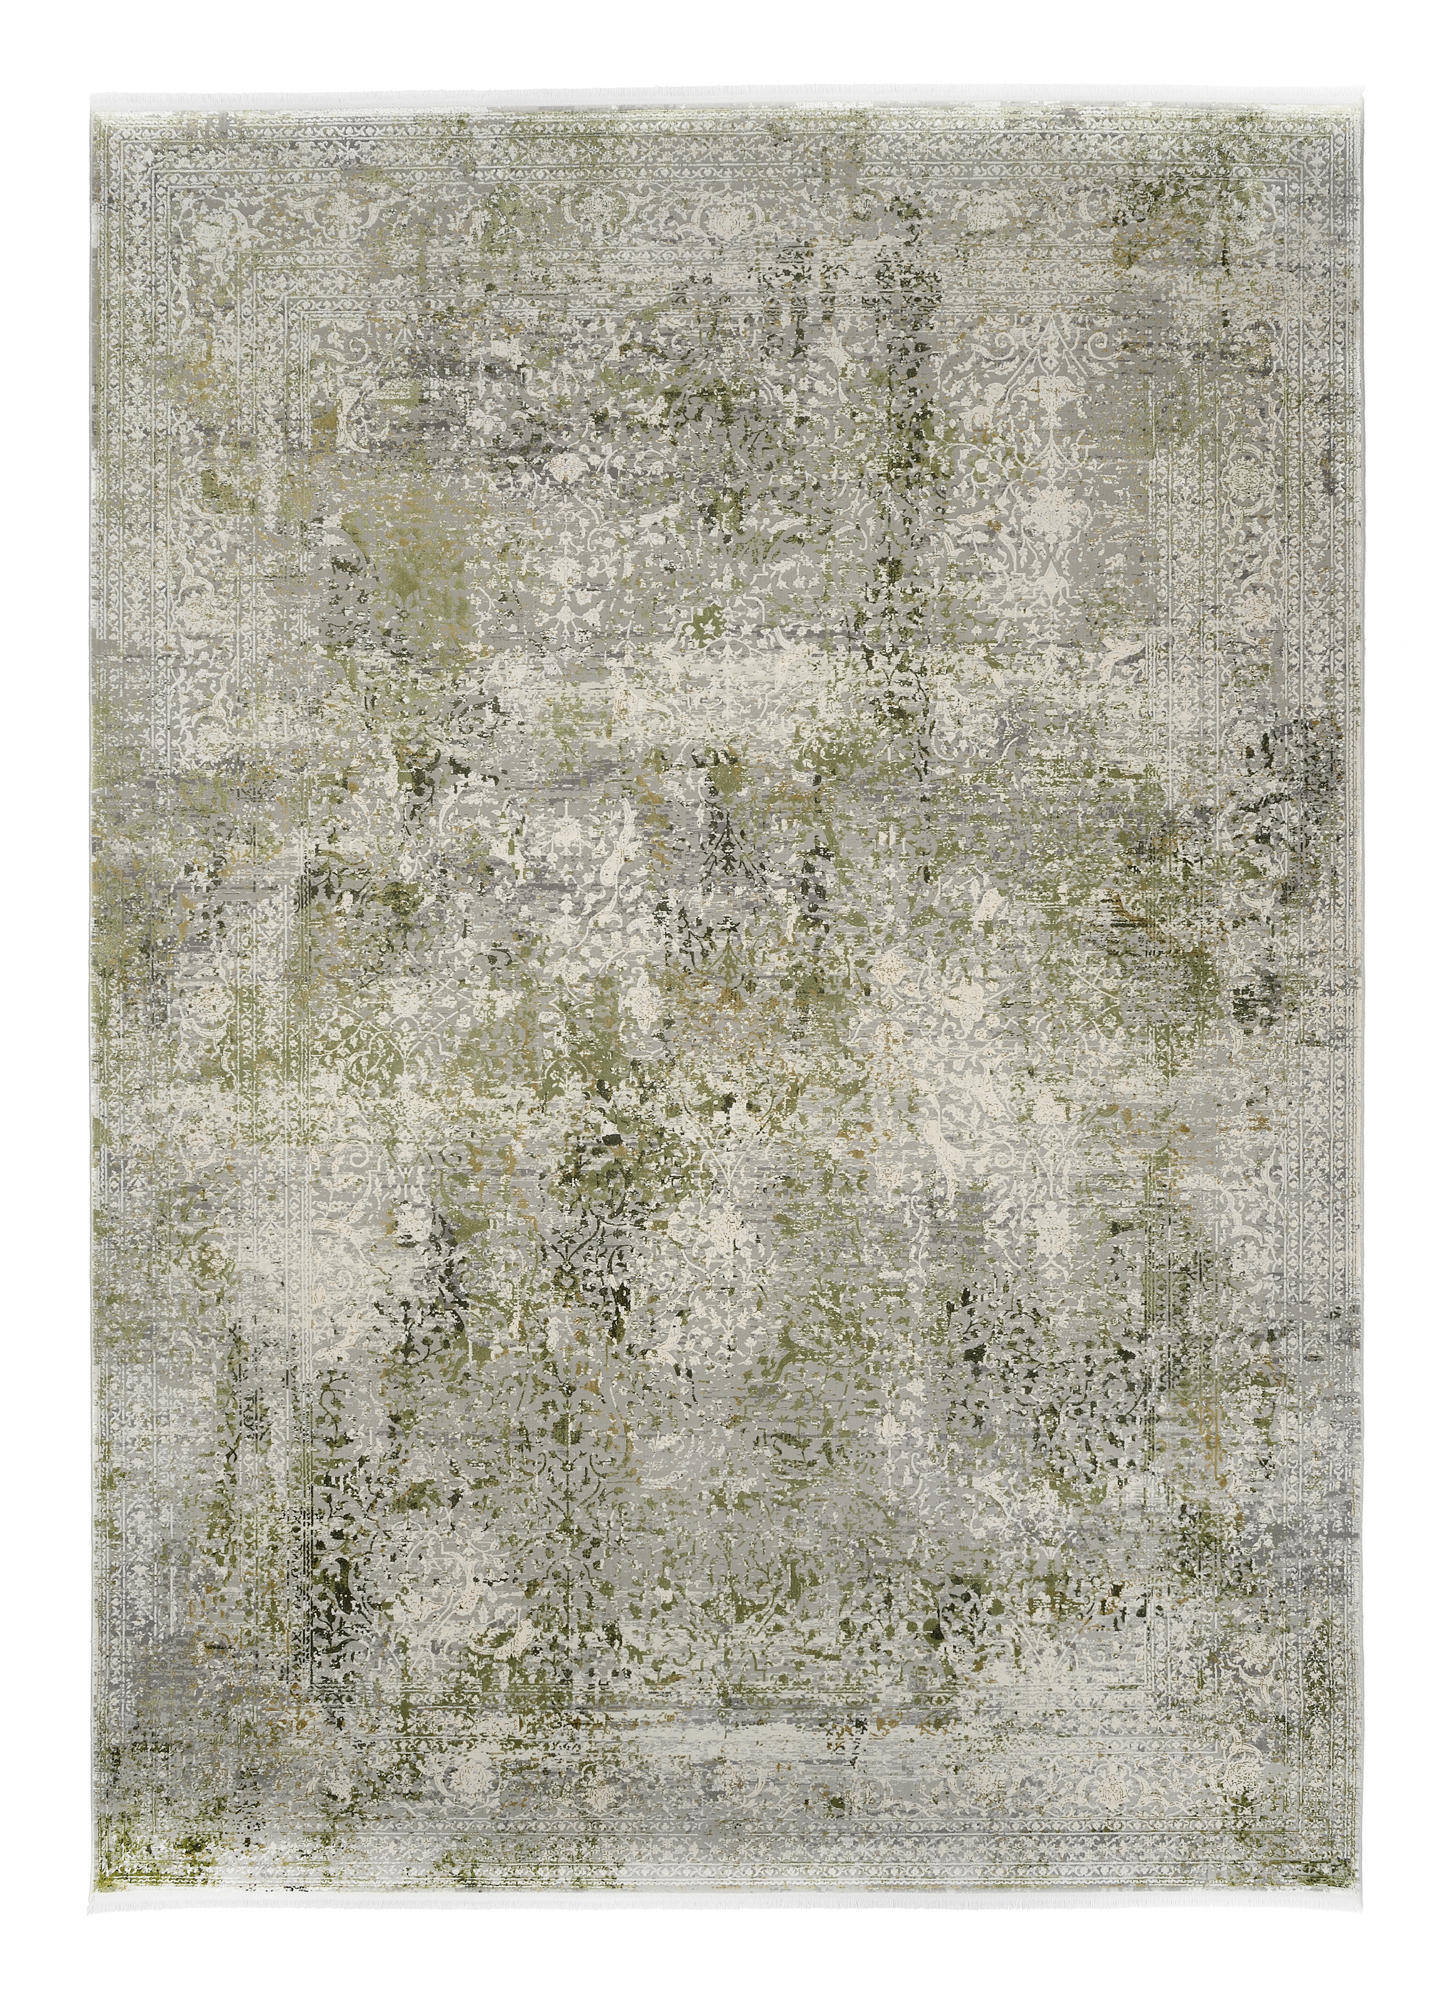 WEBTEPPICH  67/130 cm  Grau, Grün   - Grau/Grün, Design, Textil (67/130cm) - Dieter Knoll